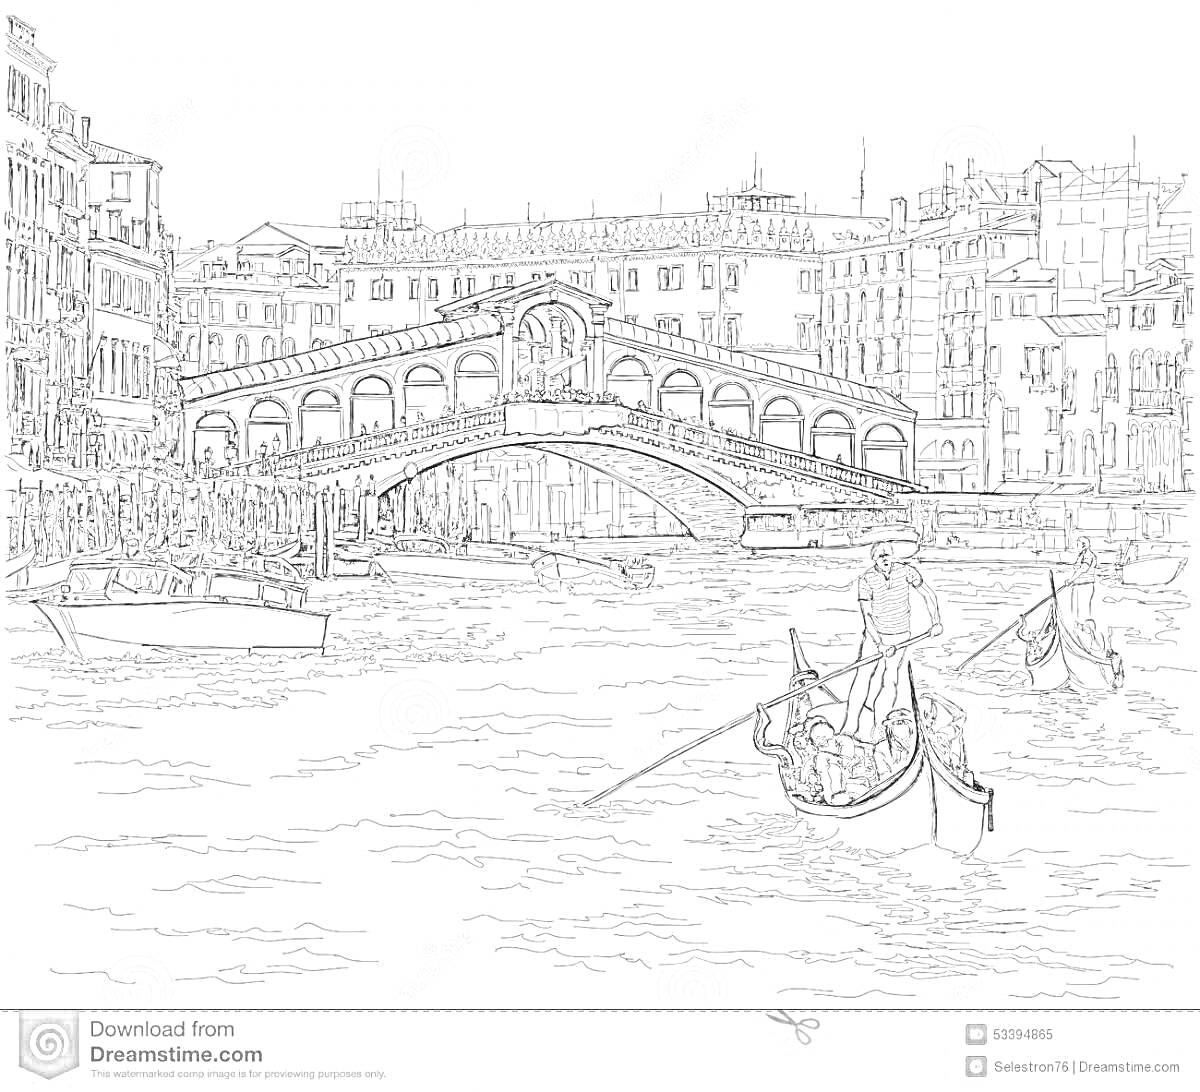 Раскраска Вид на мост Риальто с гондольерами, здания вдоль канала